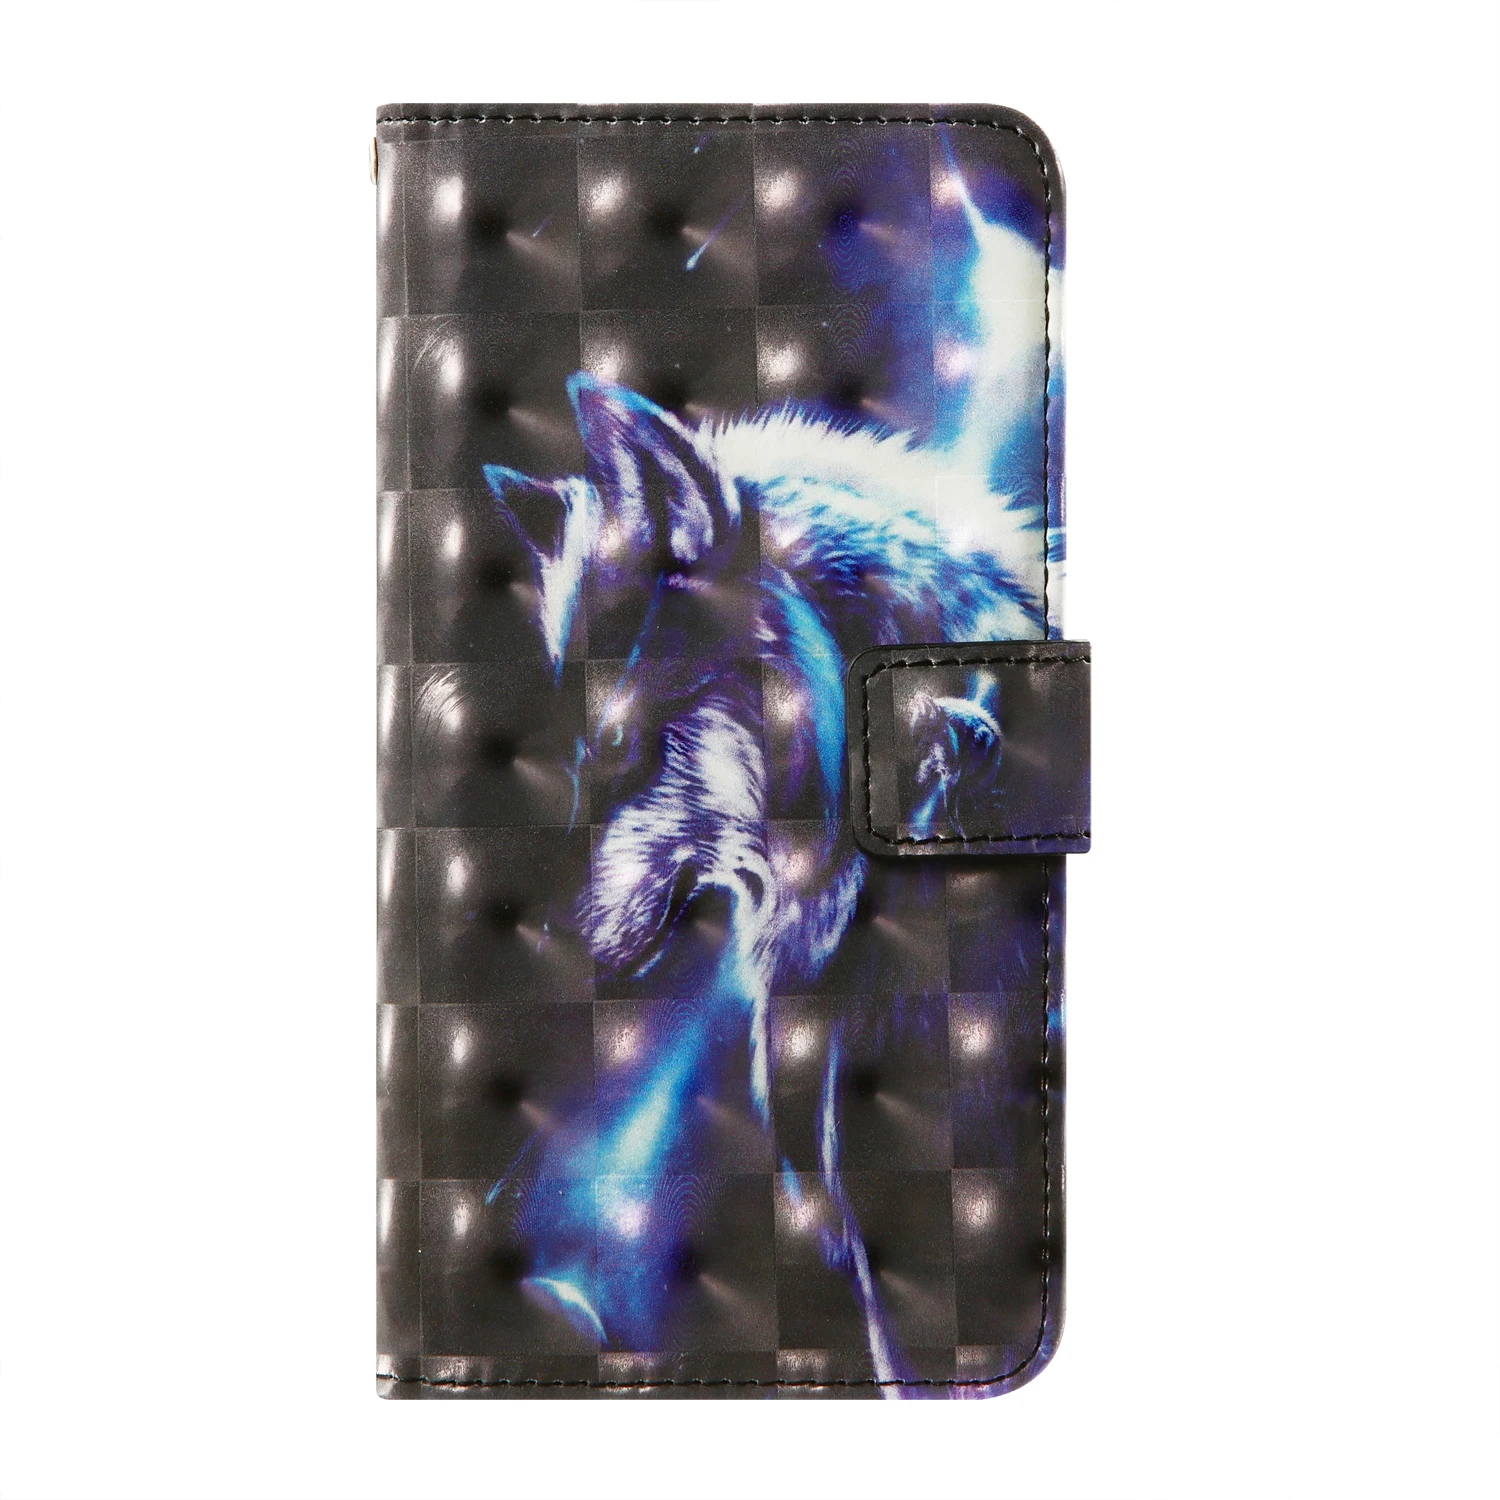 Кожаный чехол-бумажник с откидной крышкой 3D для Prestigio Grace V7 B7 P7 Muze K3 D5 E5 E7 F5 G5 LTE S Max X Pro Wize U3 razer Phone 2 чехол для телефона - Цвет: wolf